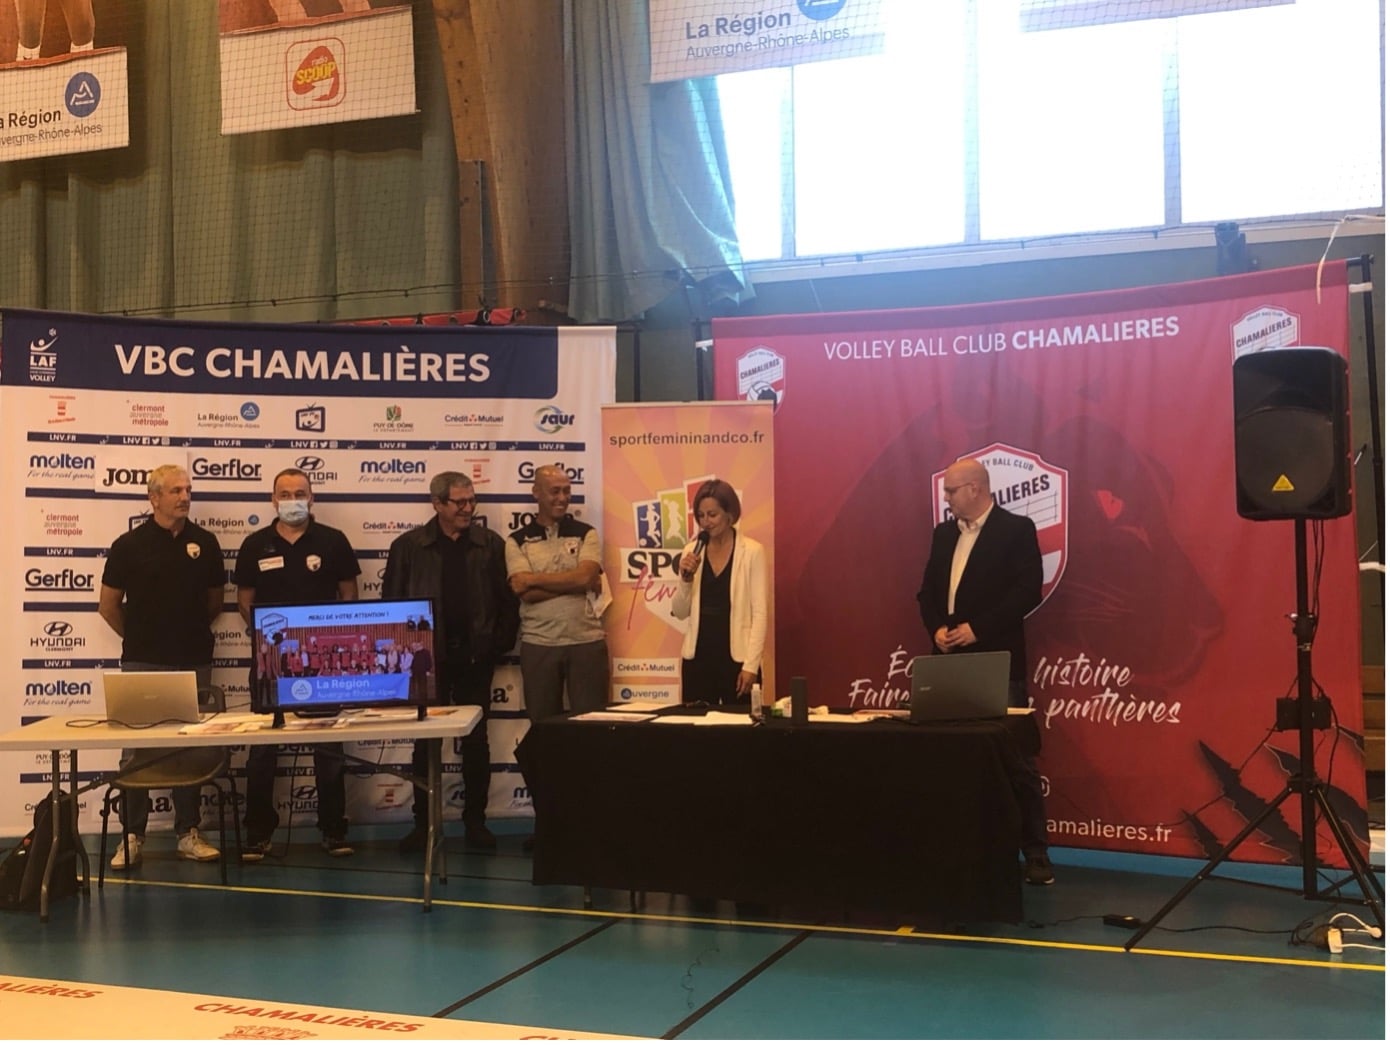 Du changement au Volley Ball Club de Chamalières !